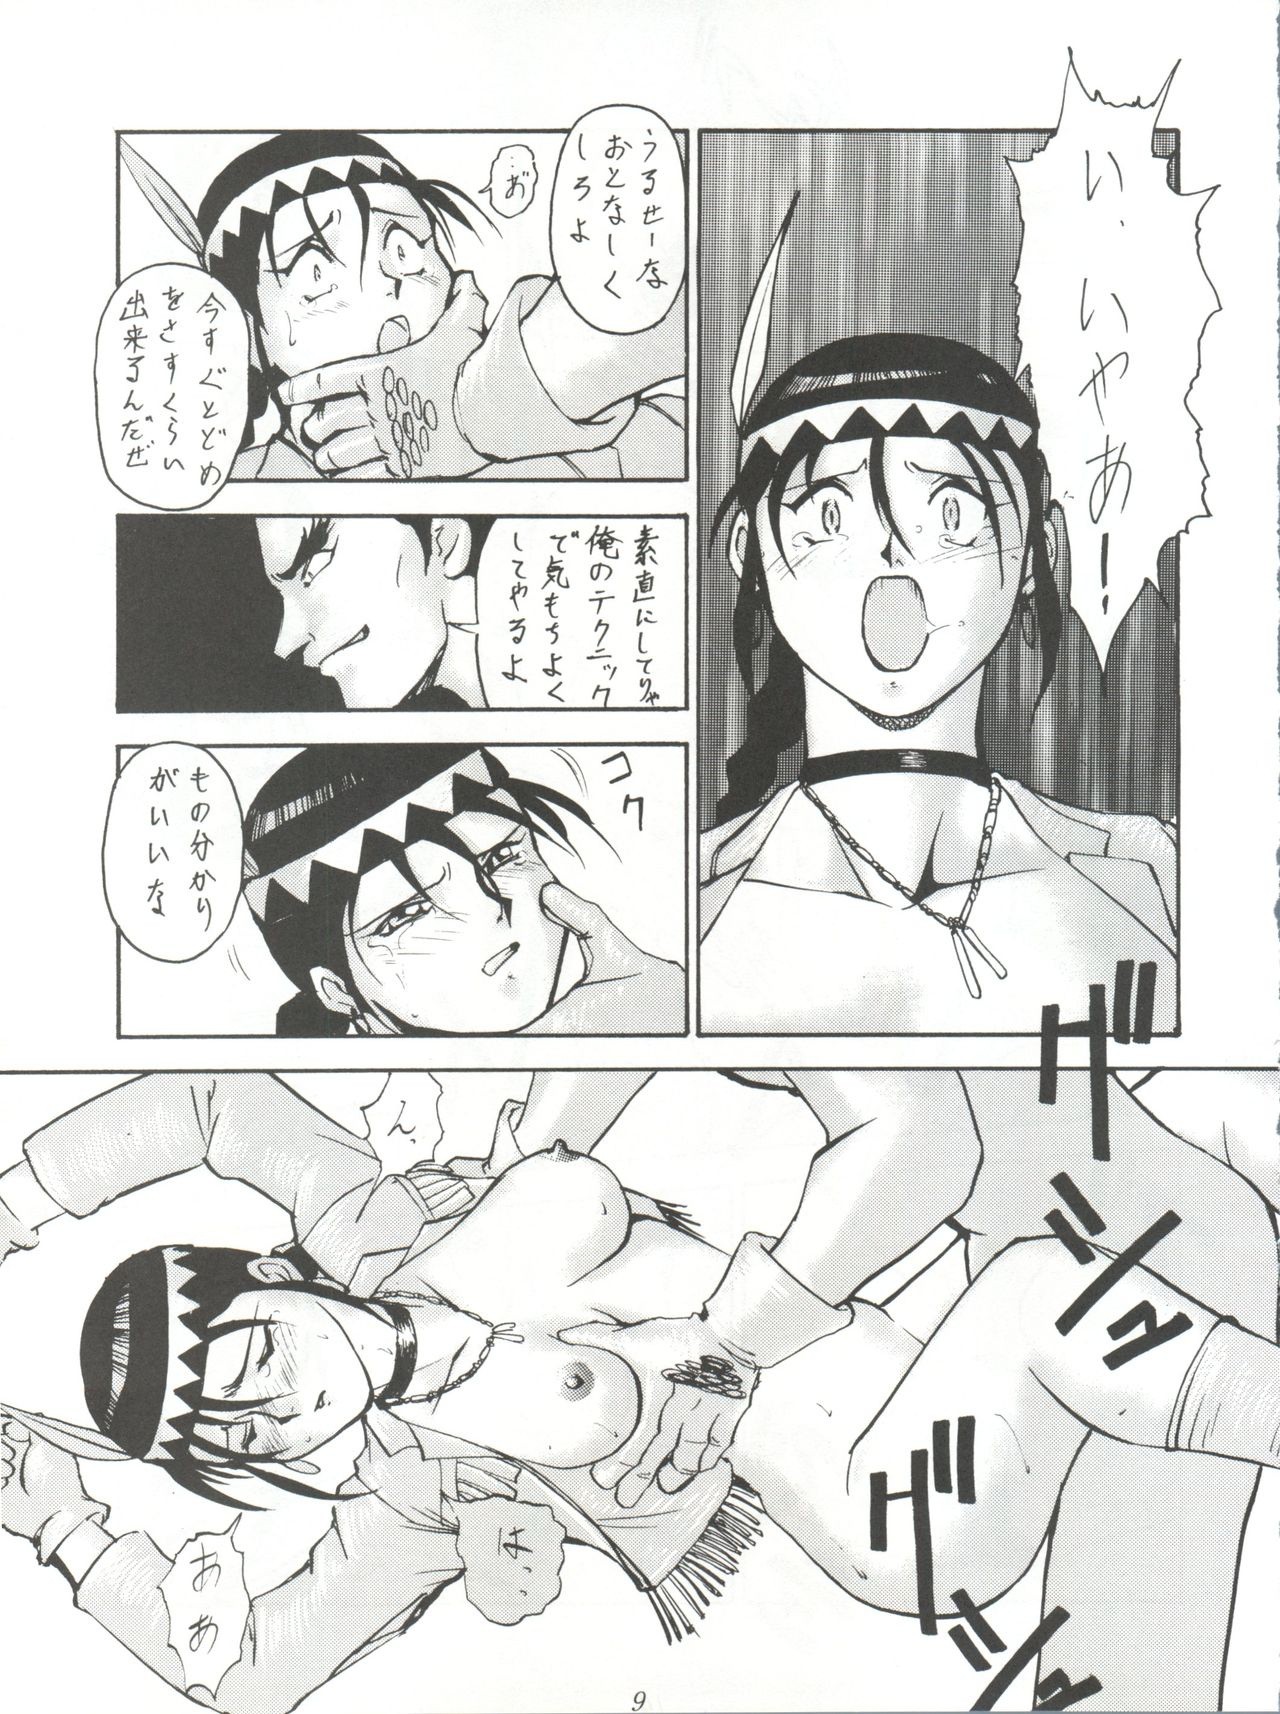 Yuuki and Yume and Mukubo's Japanese hentai manga picture 7